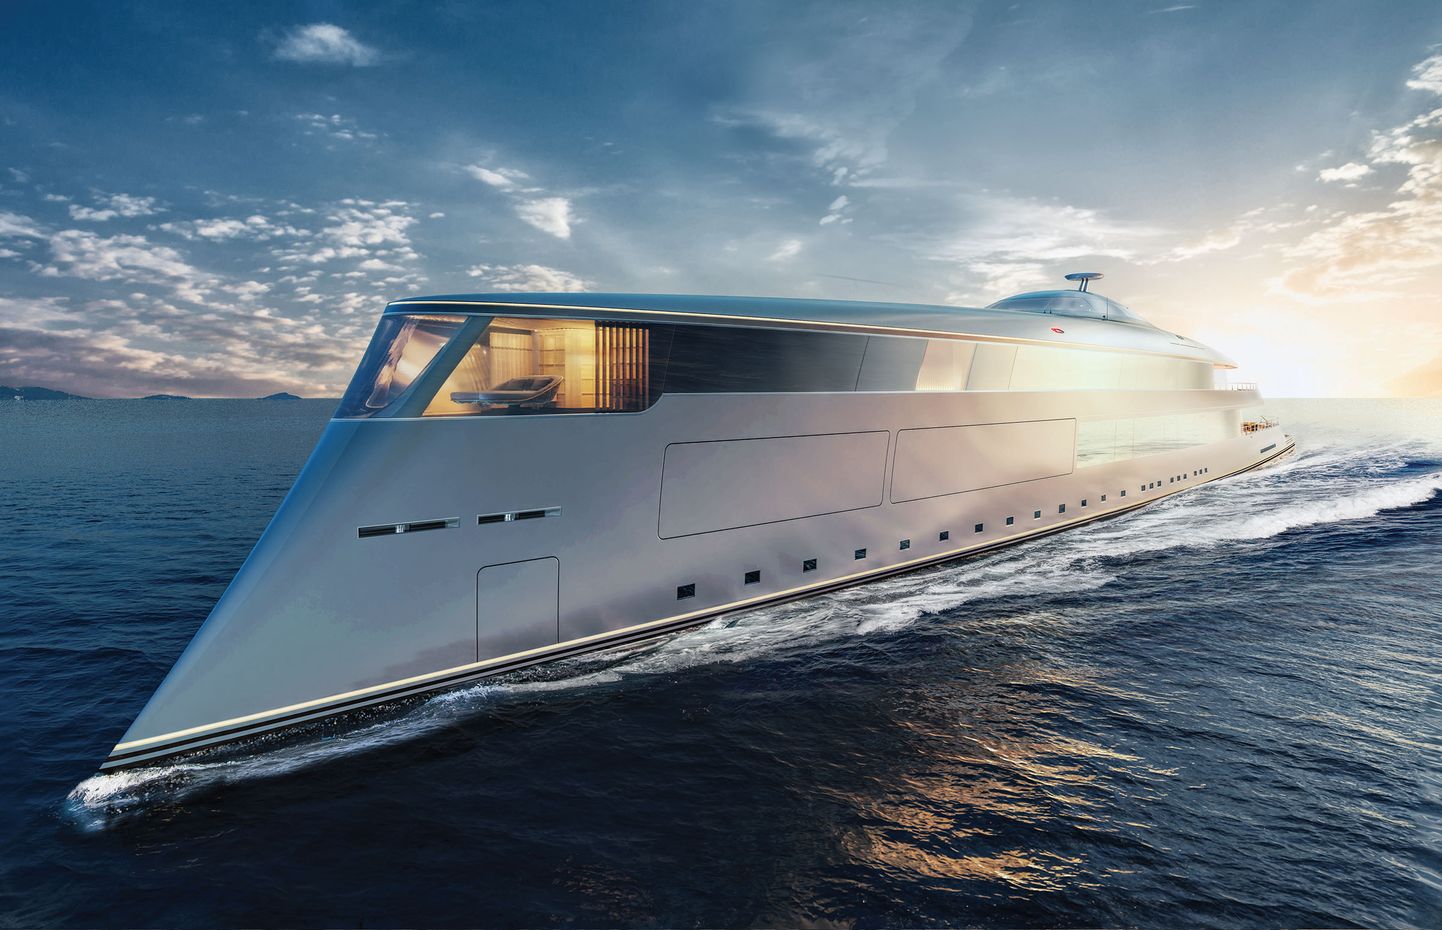 Hollandi jahtide disainifirma Sinot Yacht&Architecture Design arvutijoonistus uuest luksusjahist Aqua